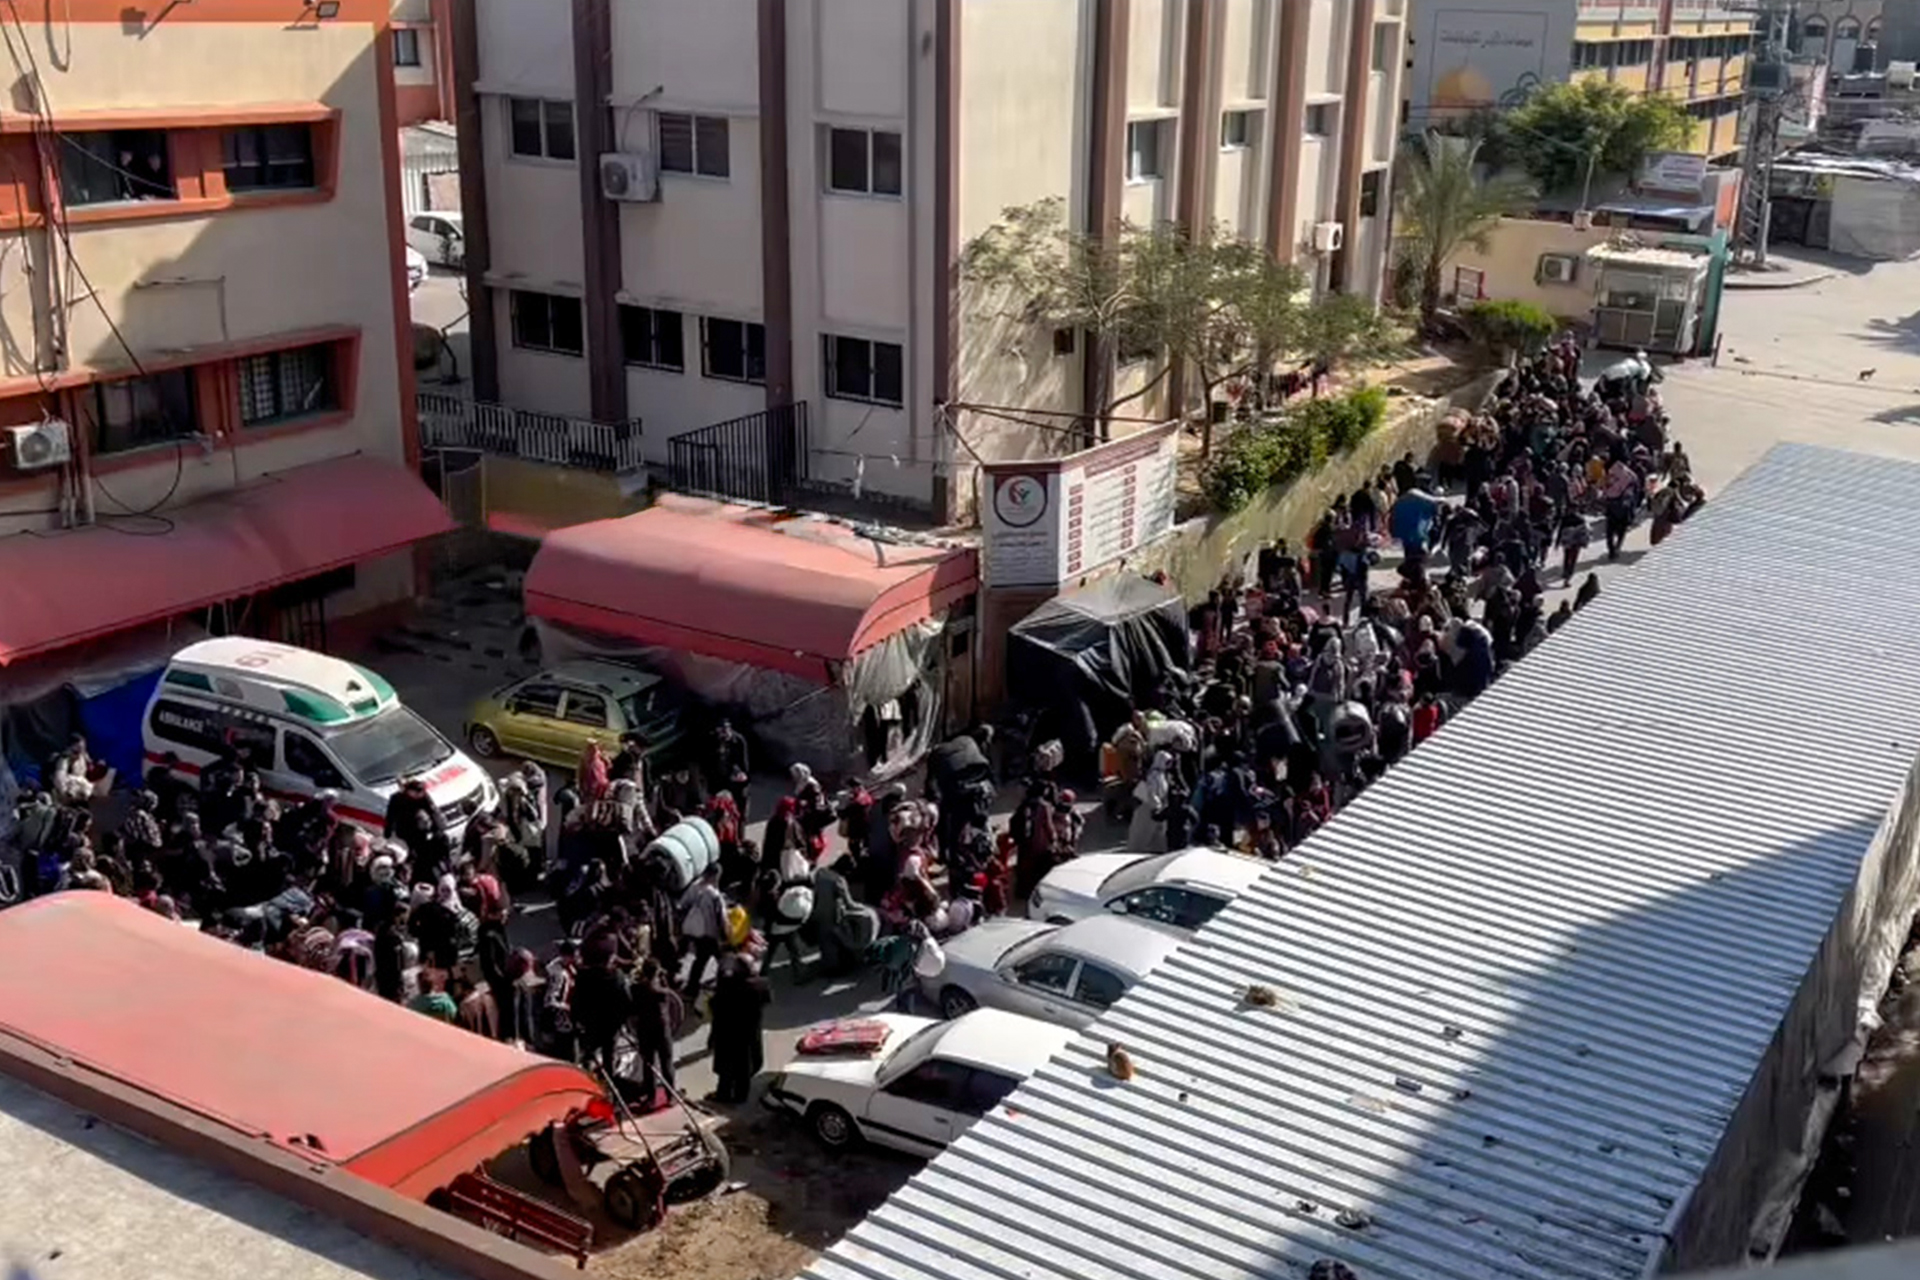 مخاوف بشأن مصير مستشفى ناصر بغزة ومنظمات إغاثة تحاول دخوله | أخبار – البوكس نيوز